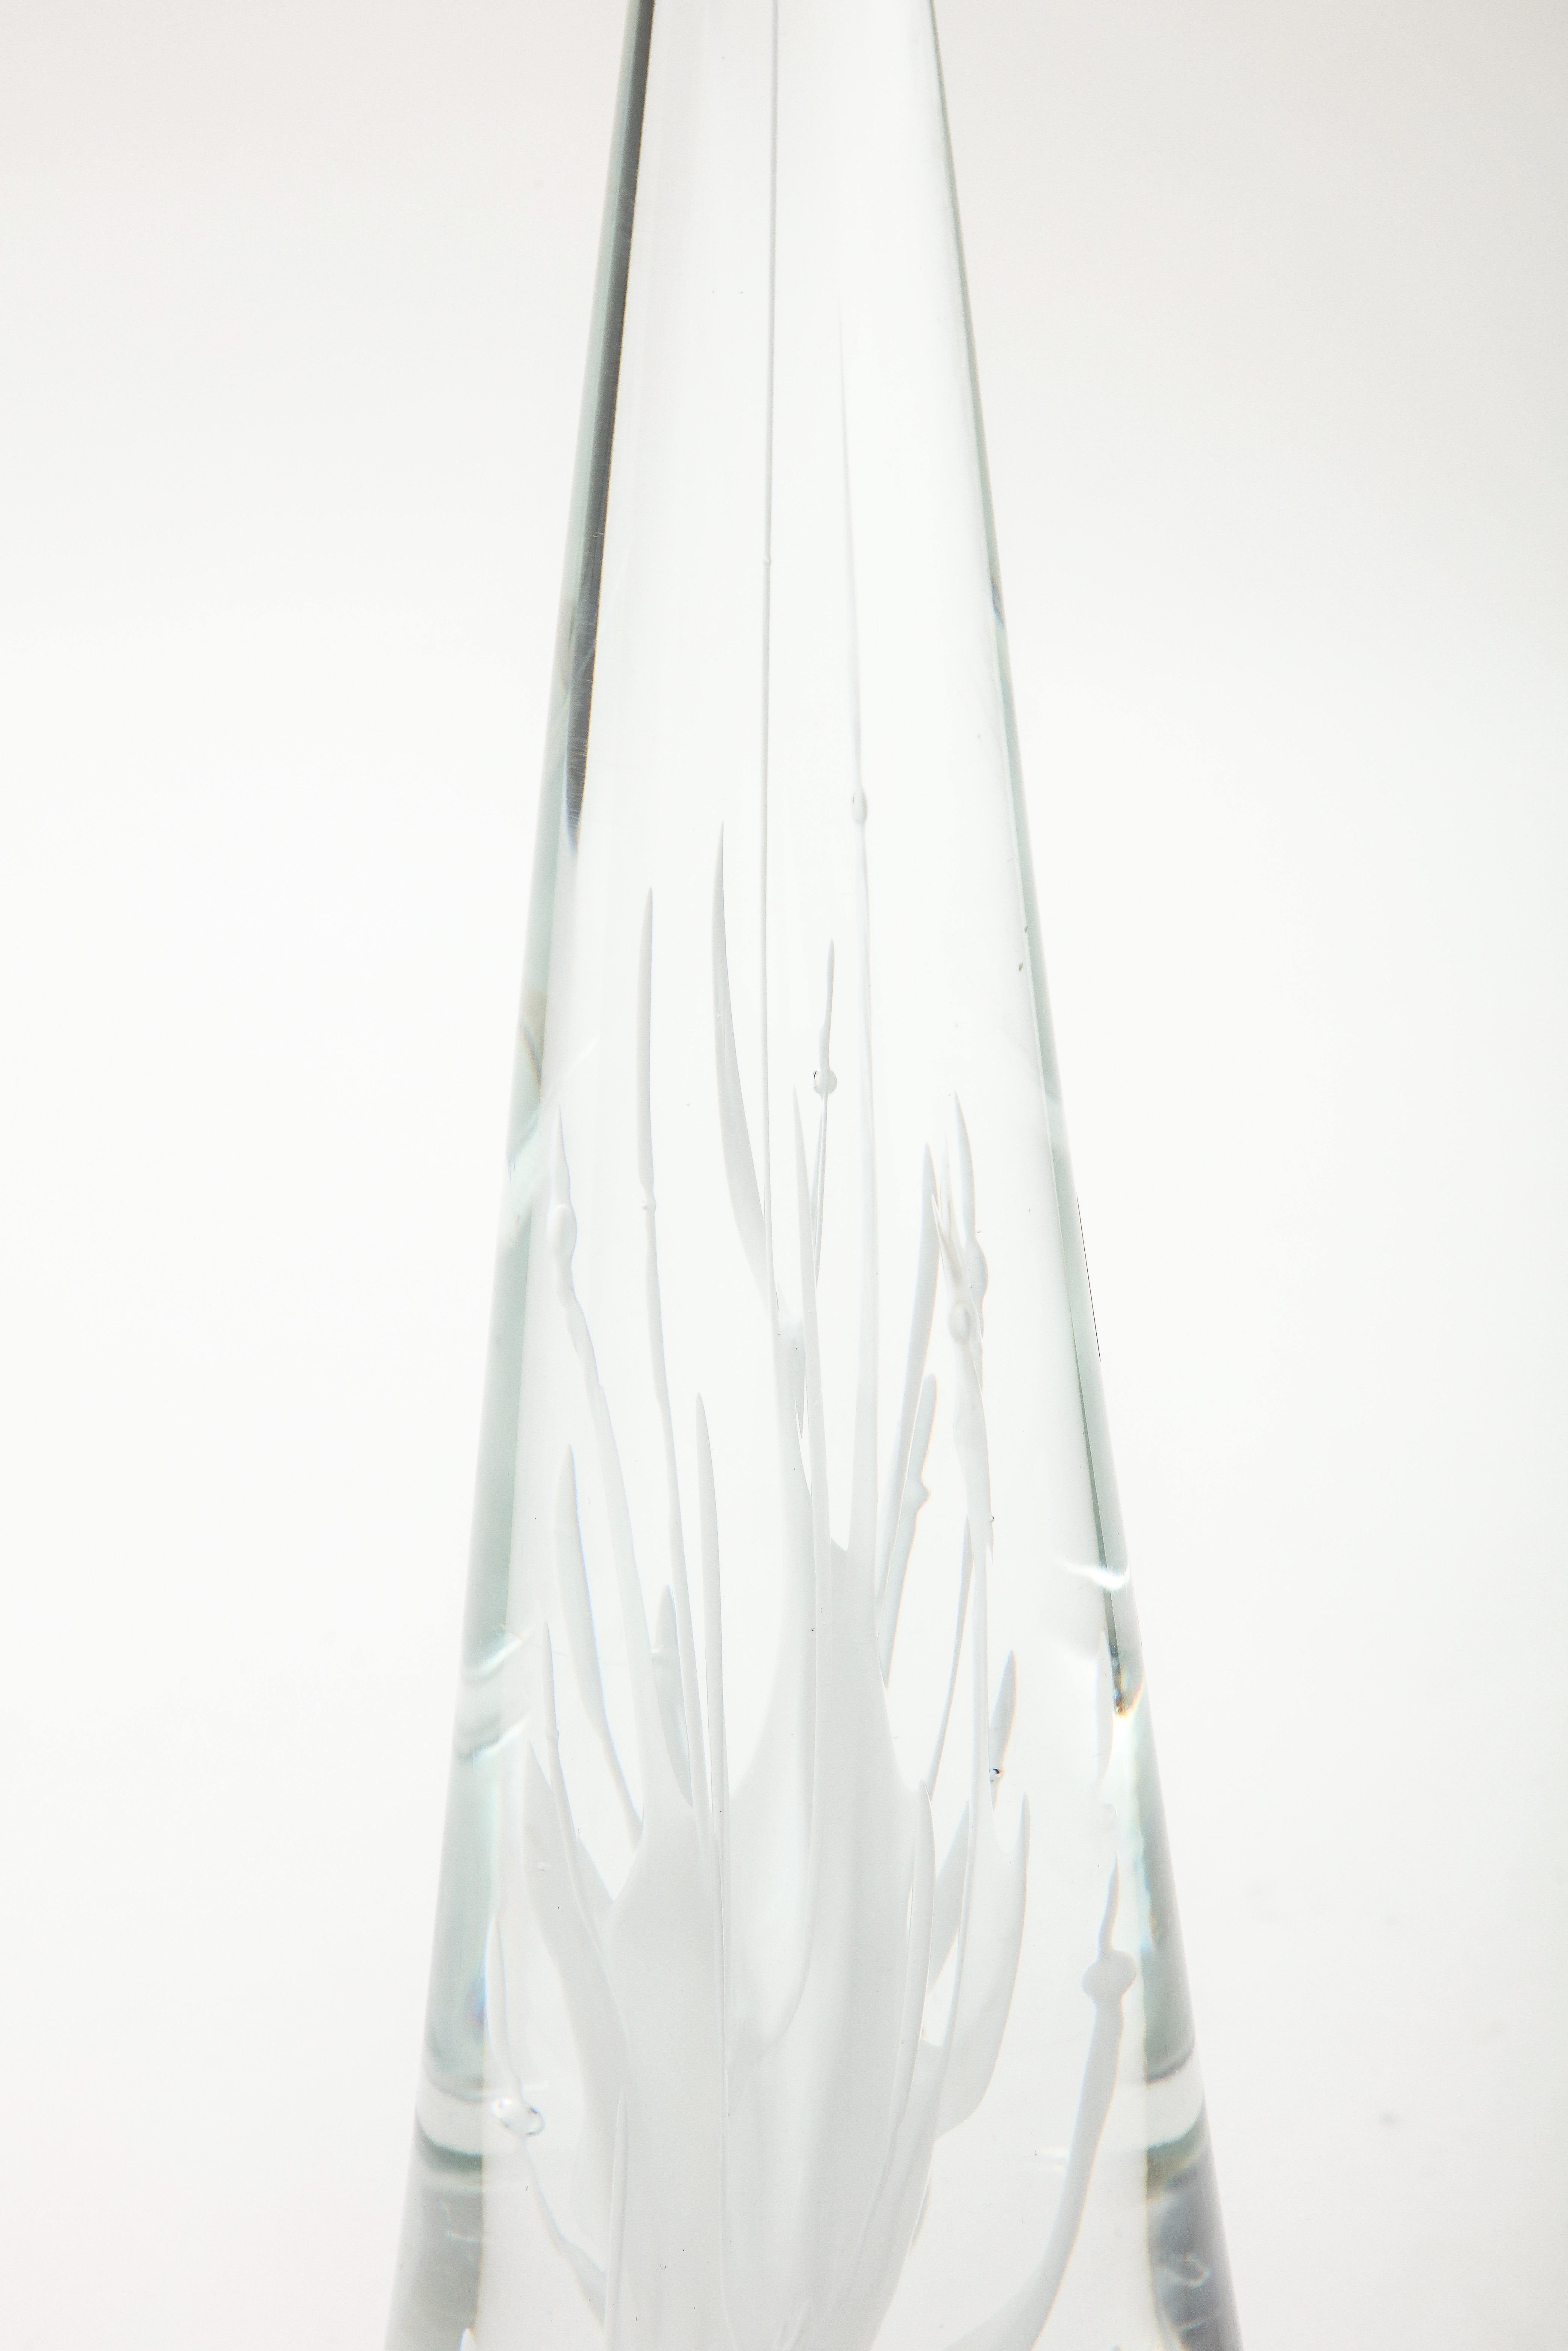 Wunderschöne moderne Licio Zanetti Murano-Glasskulptur aus den 1970er Jahren.